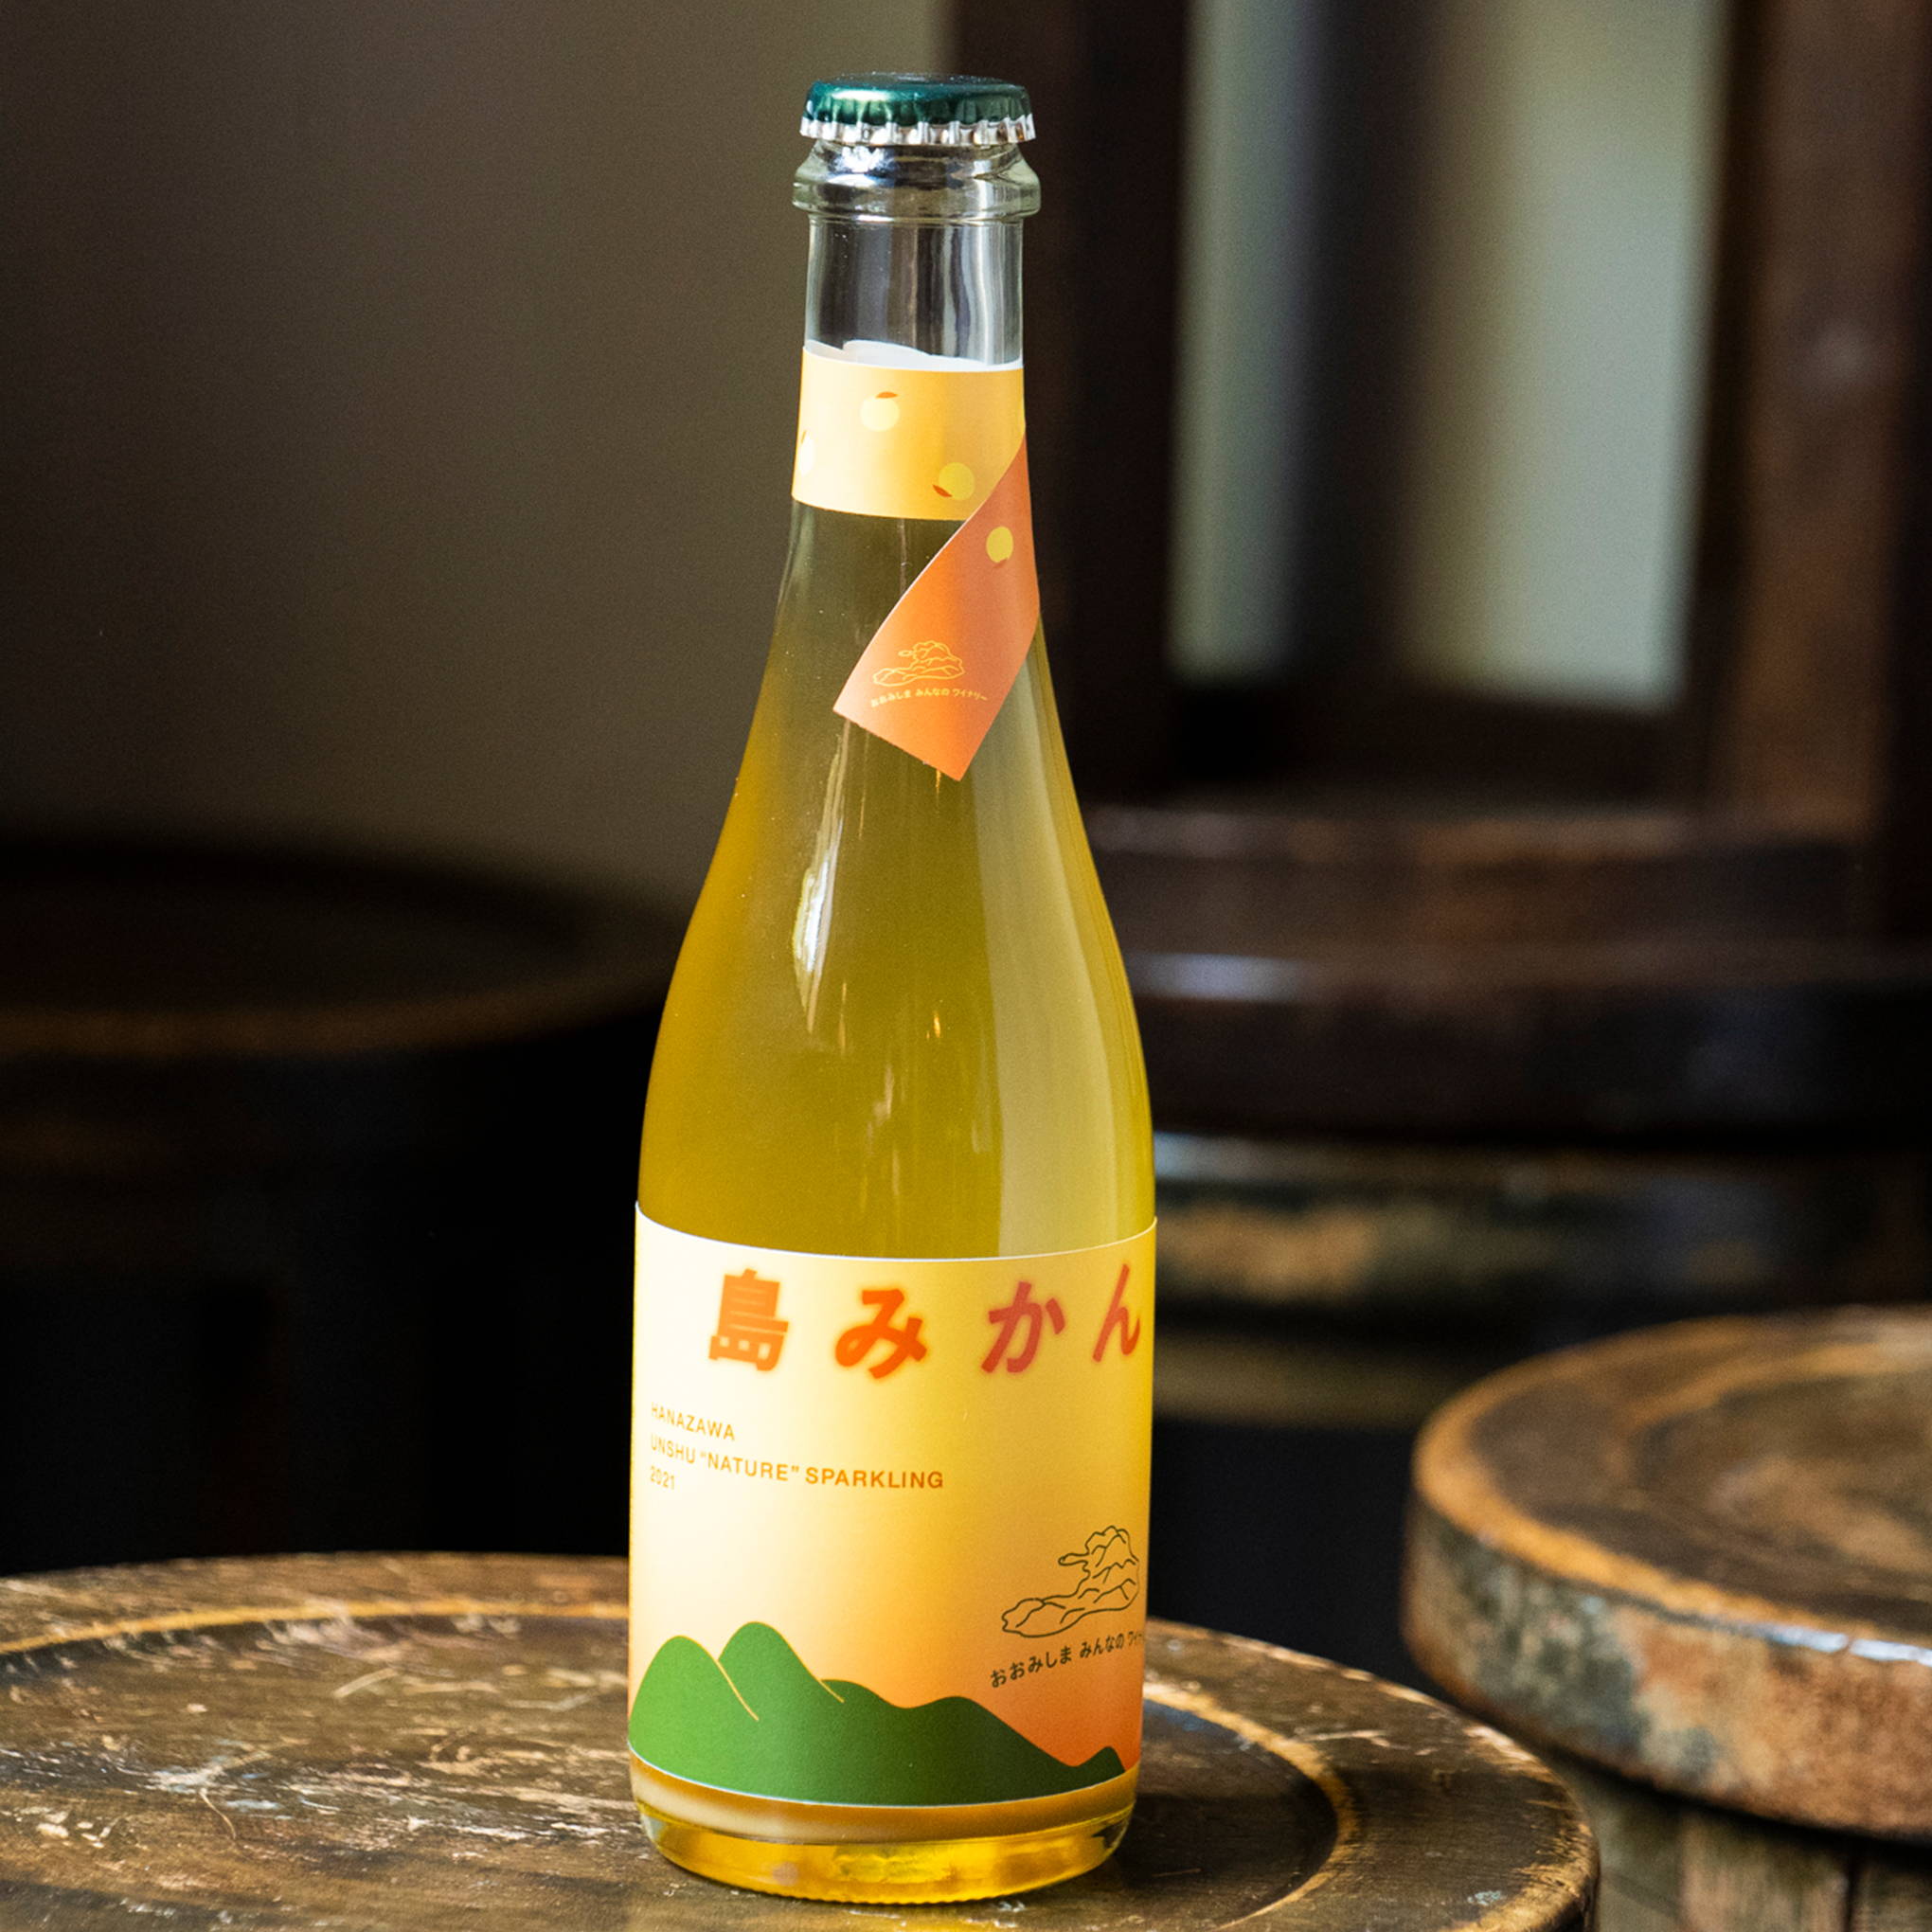 柑橘の島から到着。生産者にもこだわった温州みかんのお酒『島みかん HANAZAWA NATURE 温州スパークリング』。